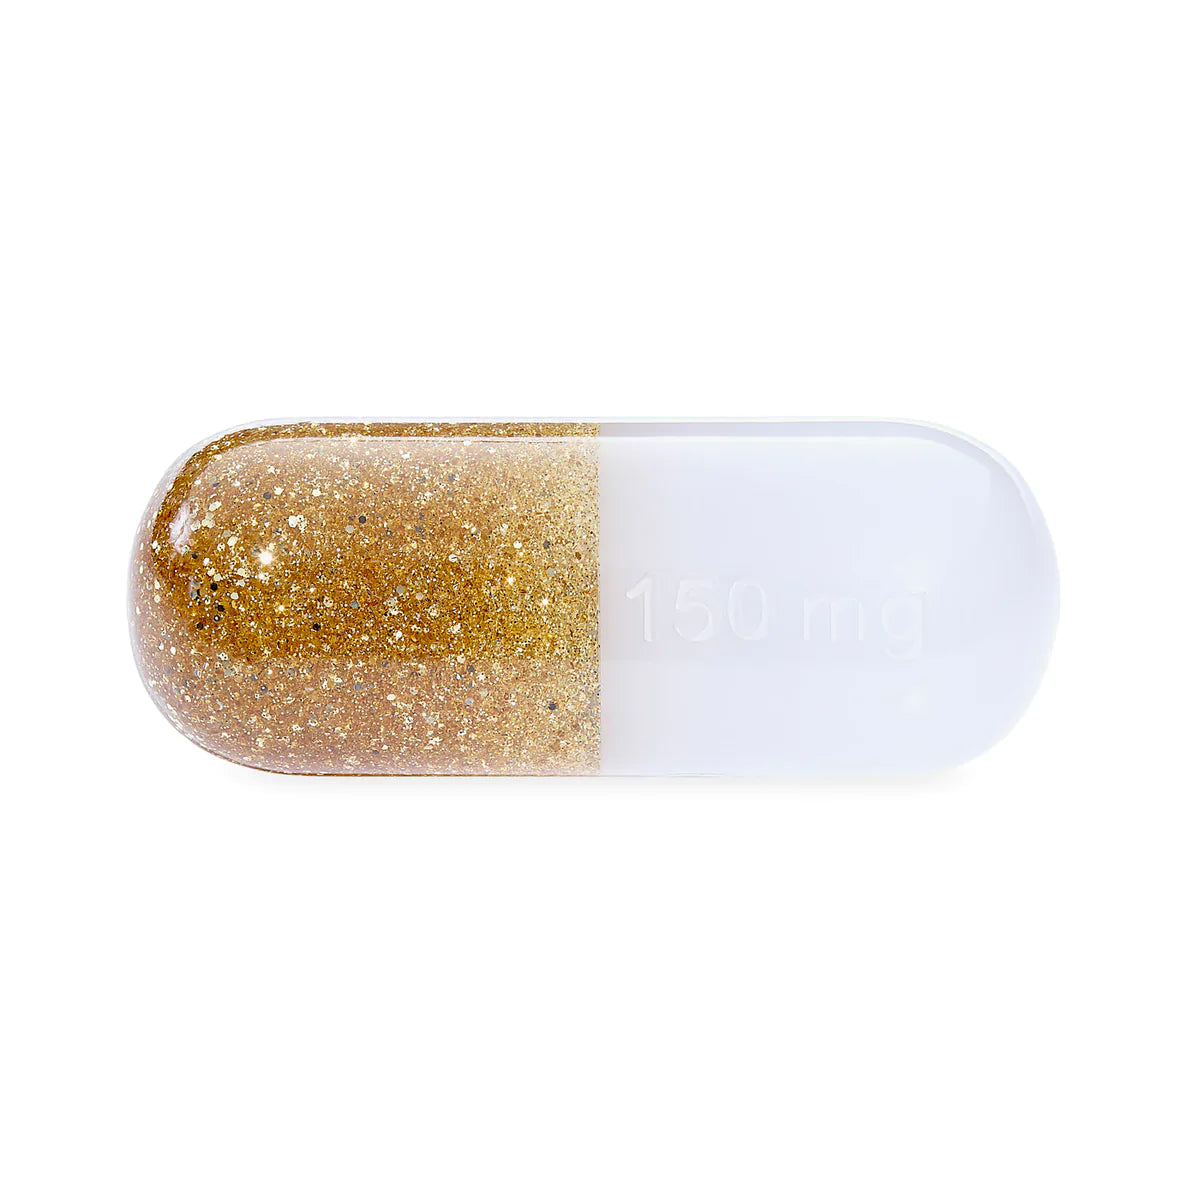 Acryl Pil goud/glitter small 150mg op standaard